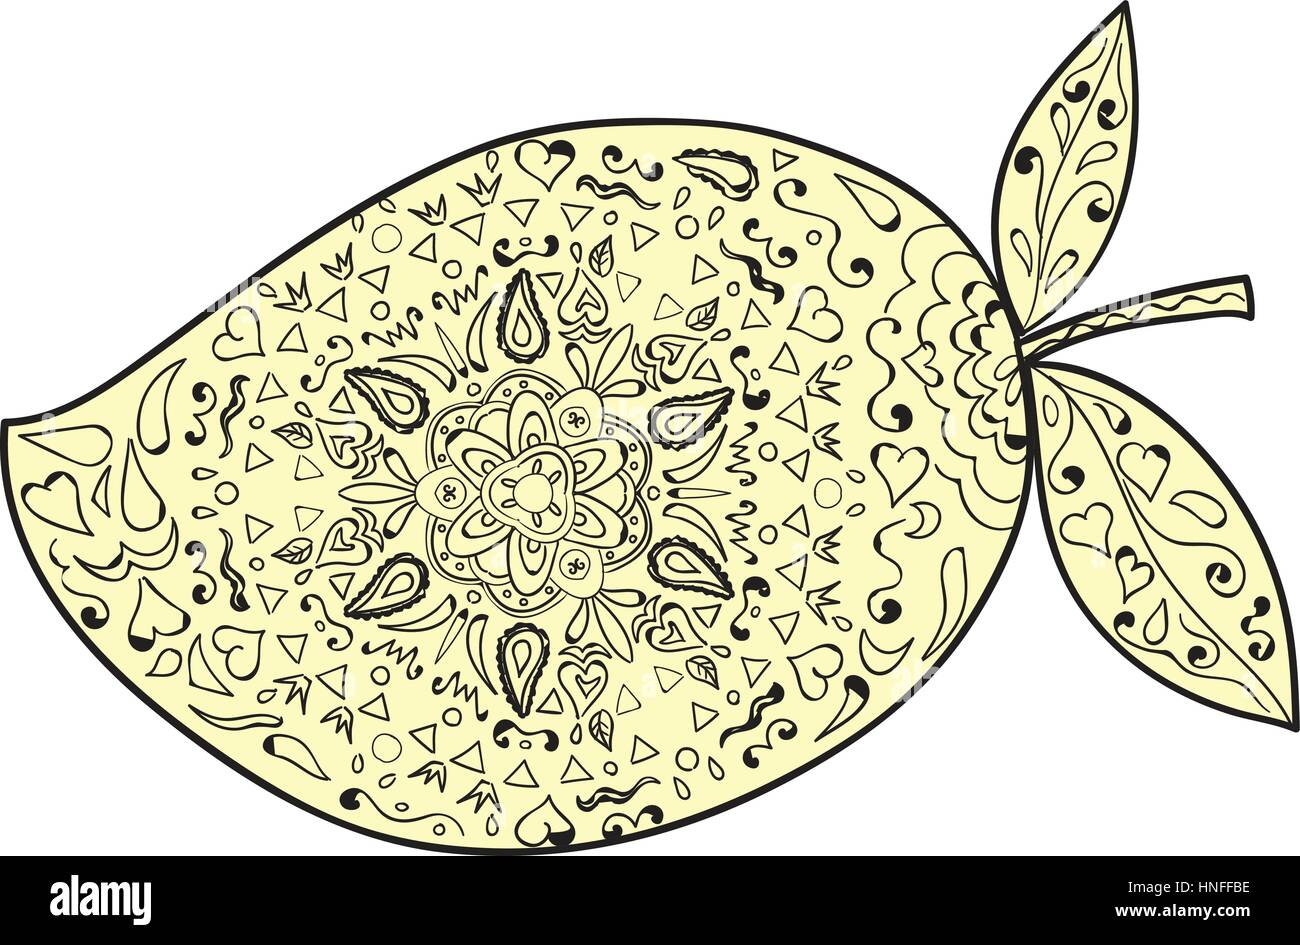 Stile Mandala illustrazione di un mango, una succosa tropical frutta a nocciolo drupa appartenenti al genere Mangifera impostato su isolato sullo sfondo bianco. Illustrazione Vettoriale